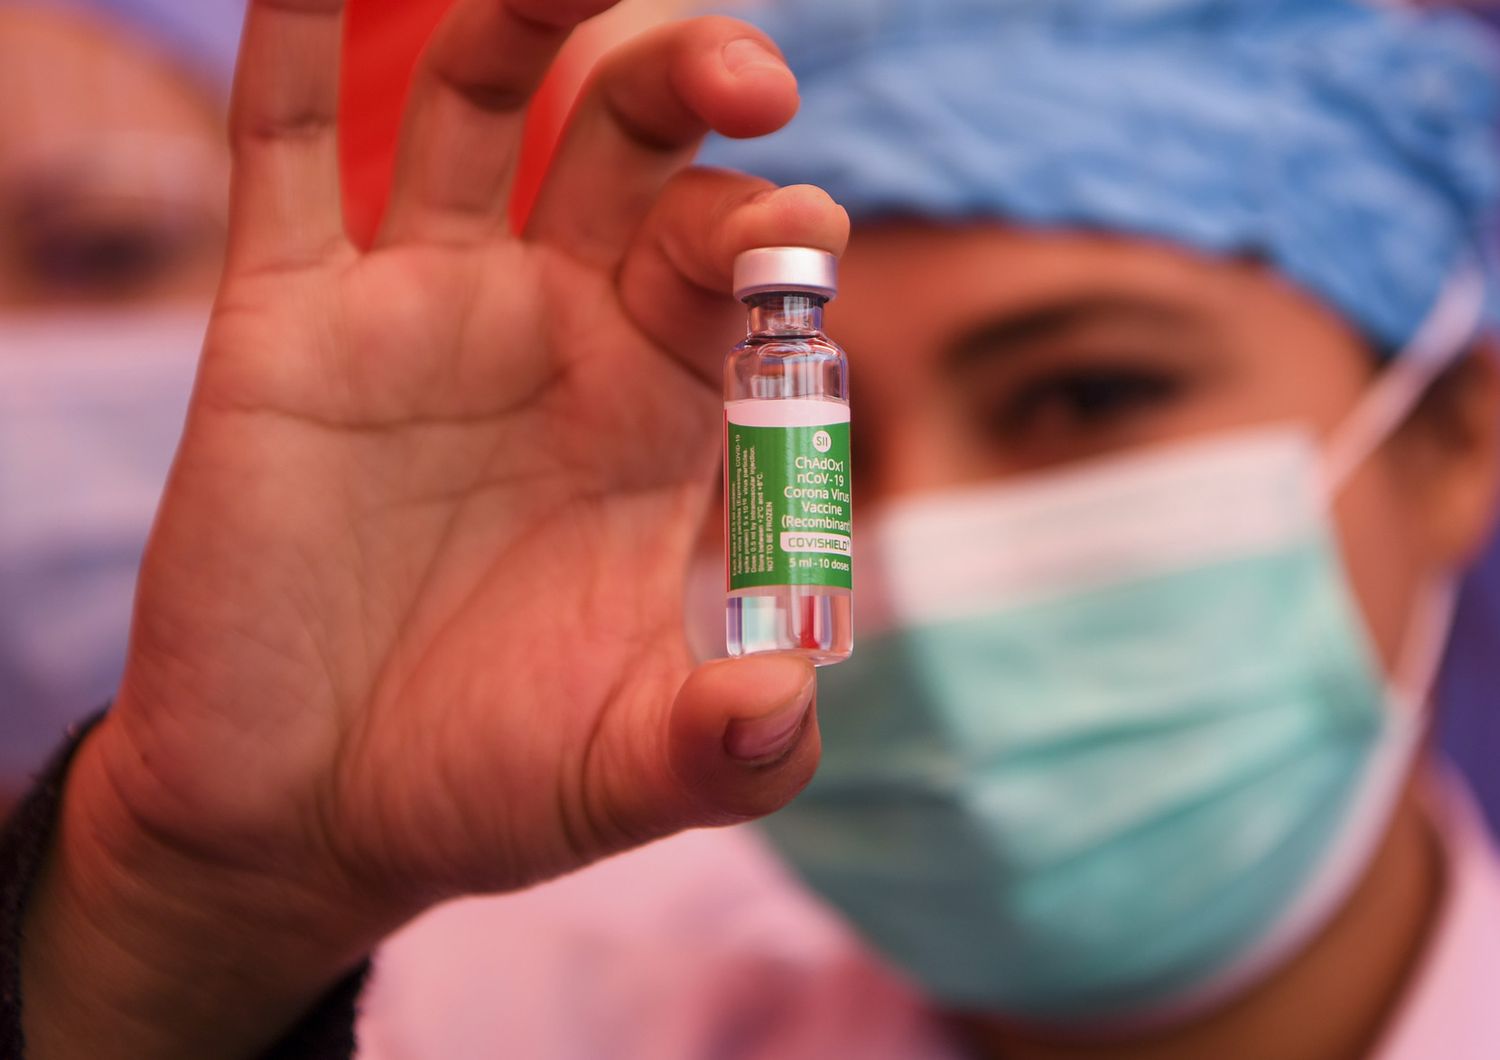 Una fiala di vaccino AstraZeneca